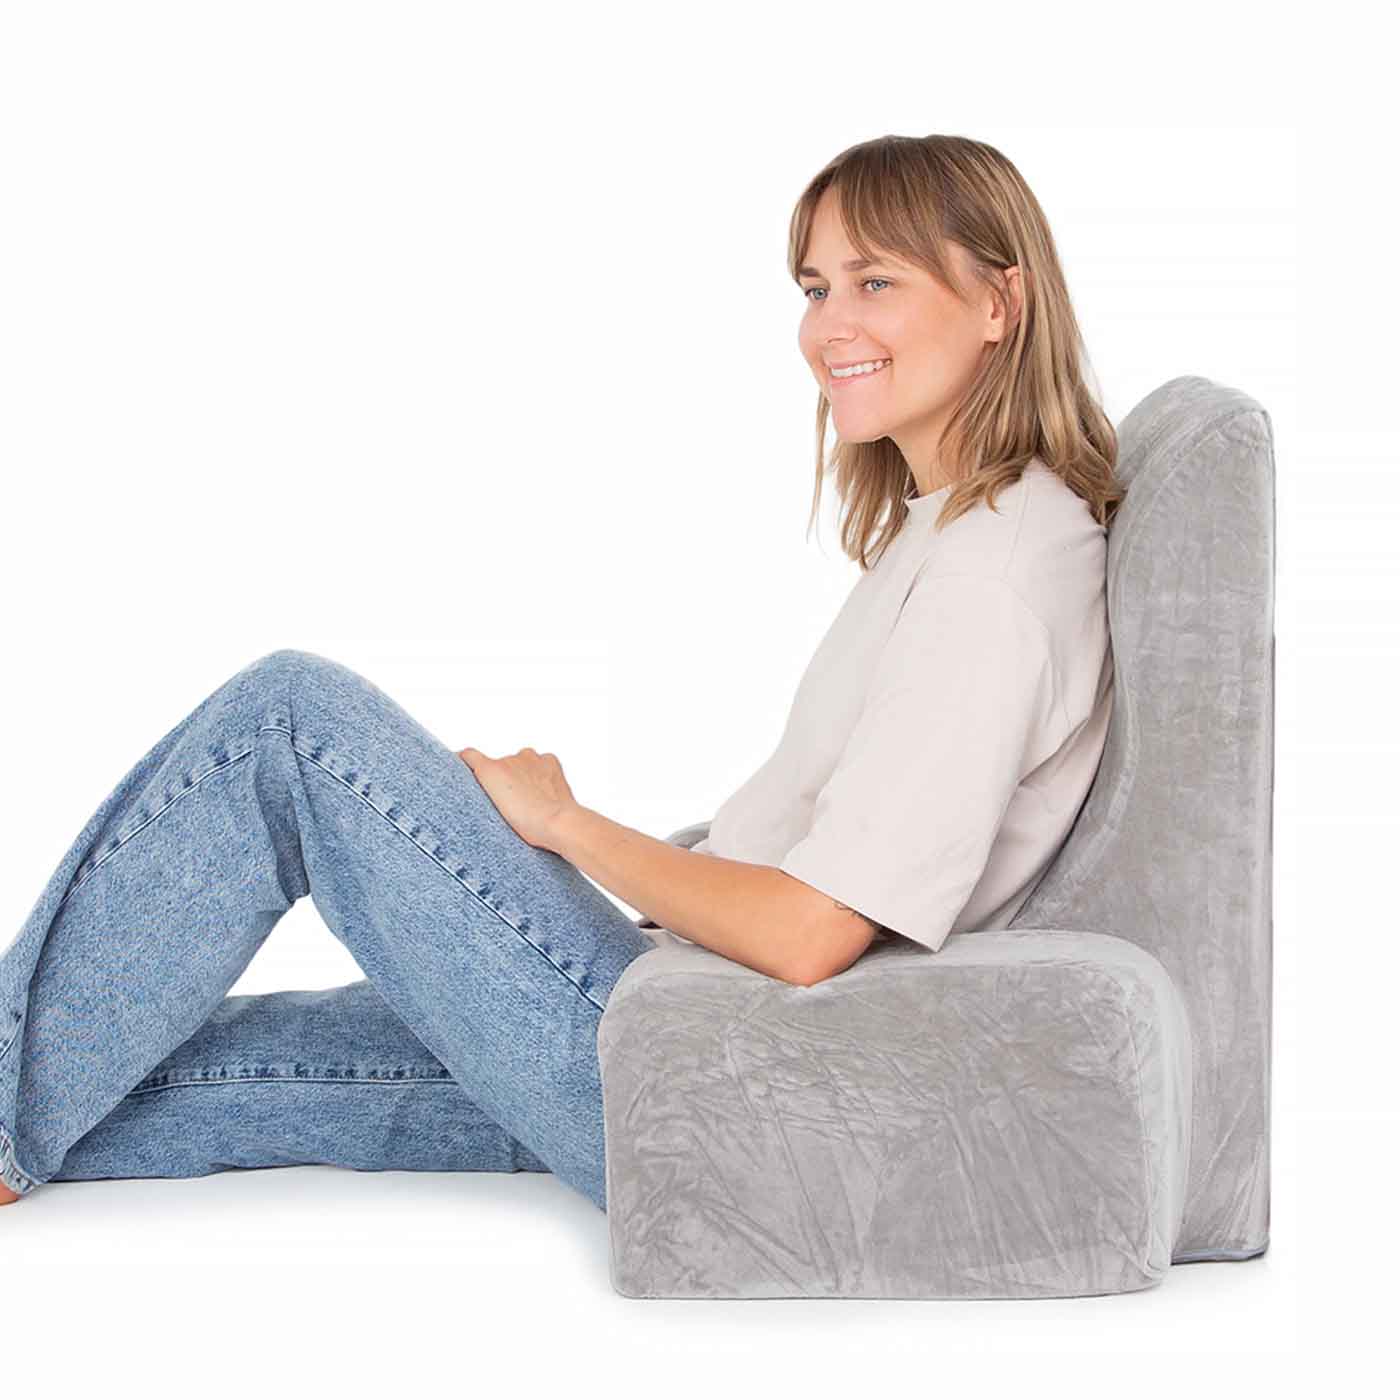 Healthfix® Keilkissen zur Verbesserung der Sitzhaltung - Bequemes